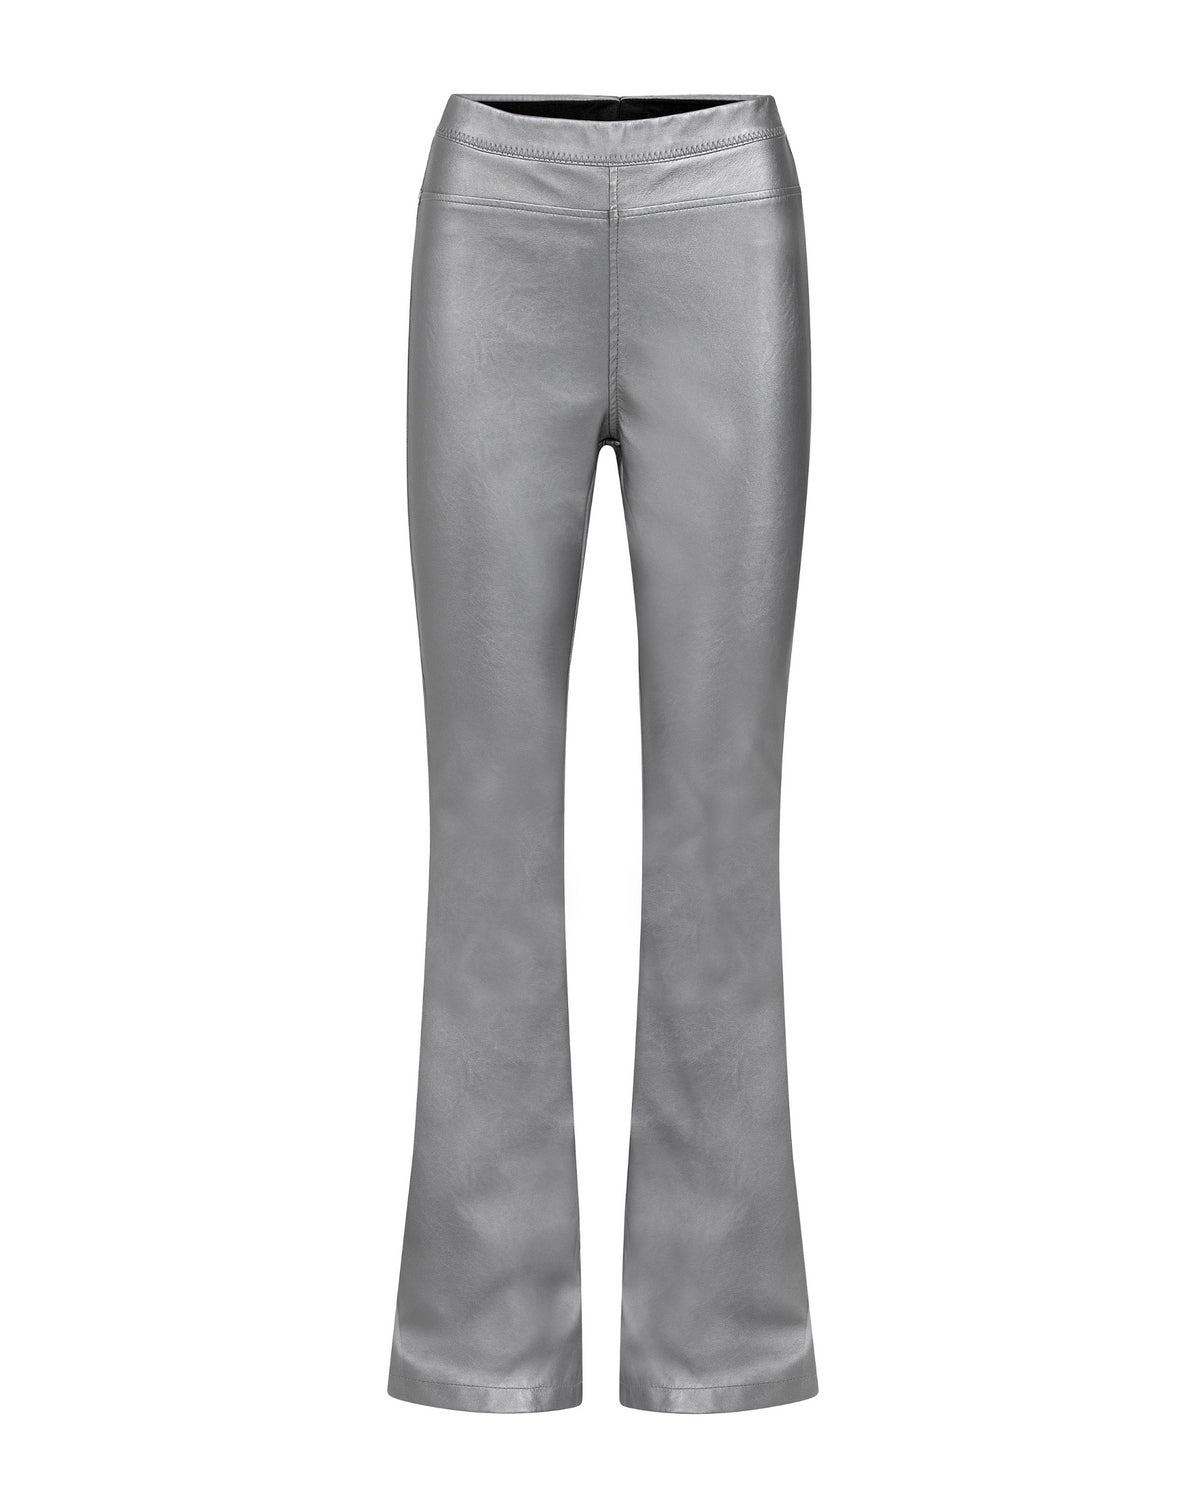 Afke Pants Metallic Grey